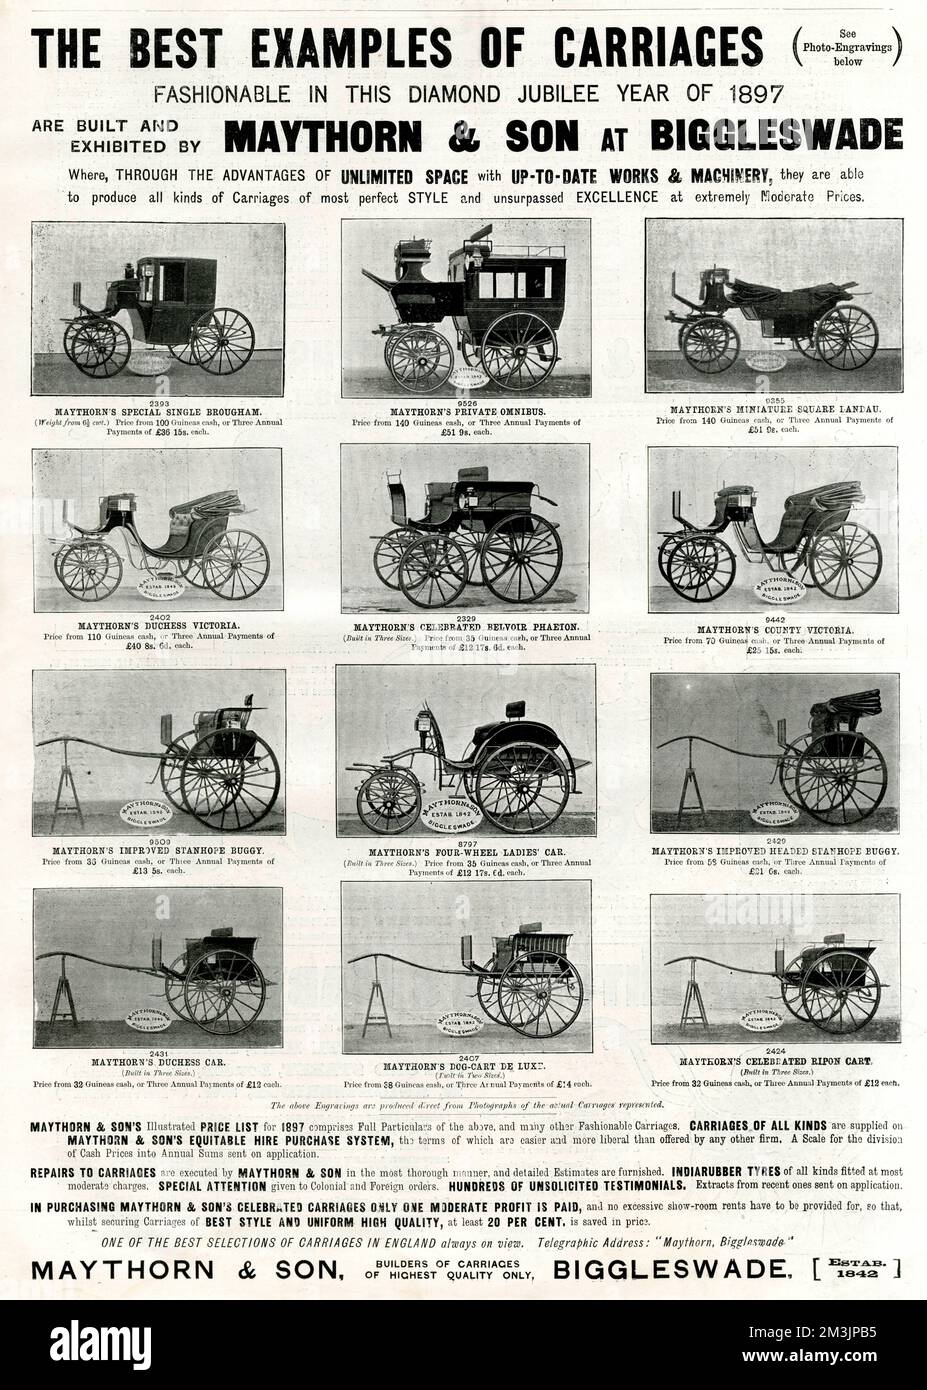 Pagina di carrozze trainate da cavalli popolare nel Giubileo dei Diamanti del 1897, visualizzata in un annuncio di Maythorn &amp; Son of Biggleswade. 1897 Foto Stock